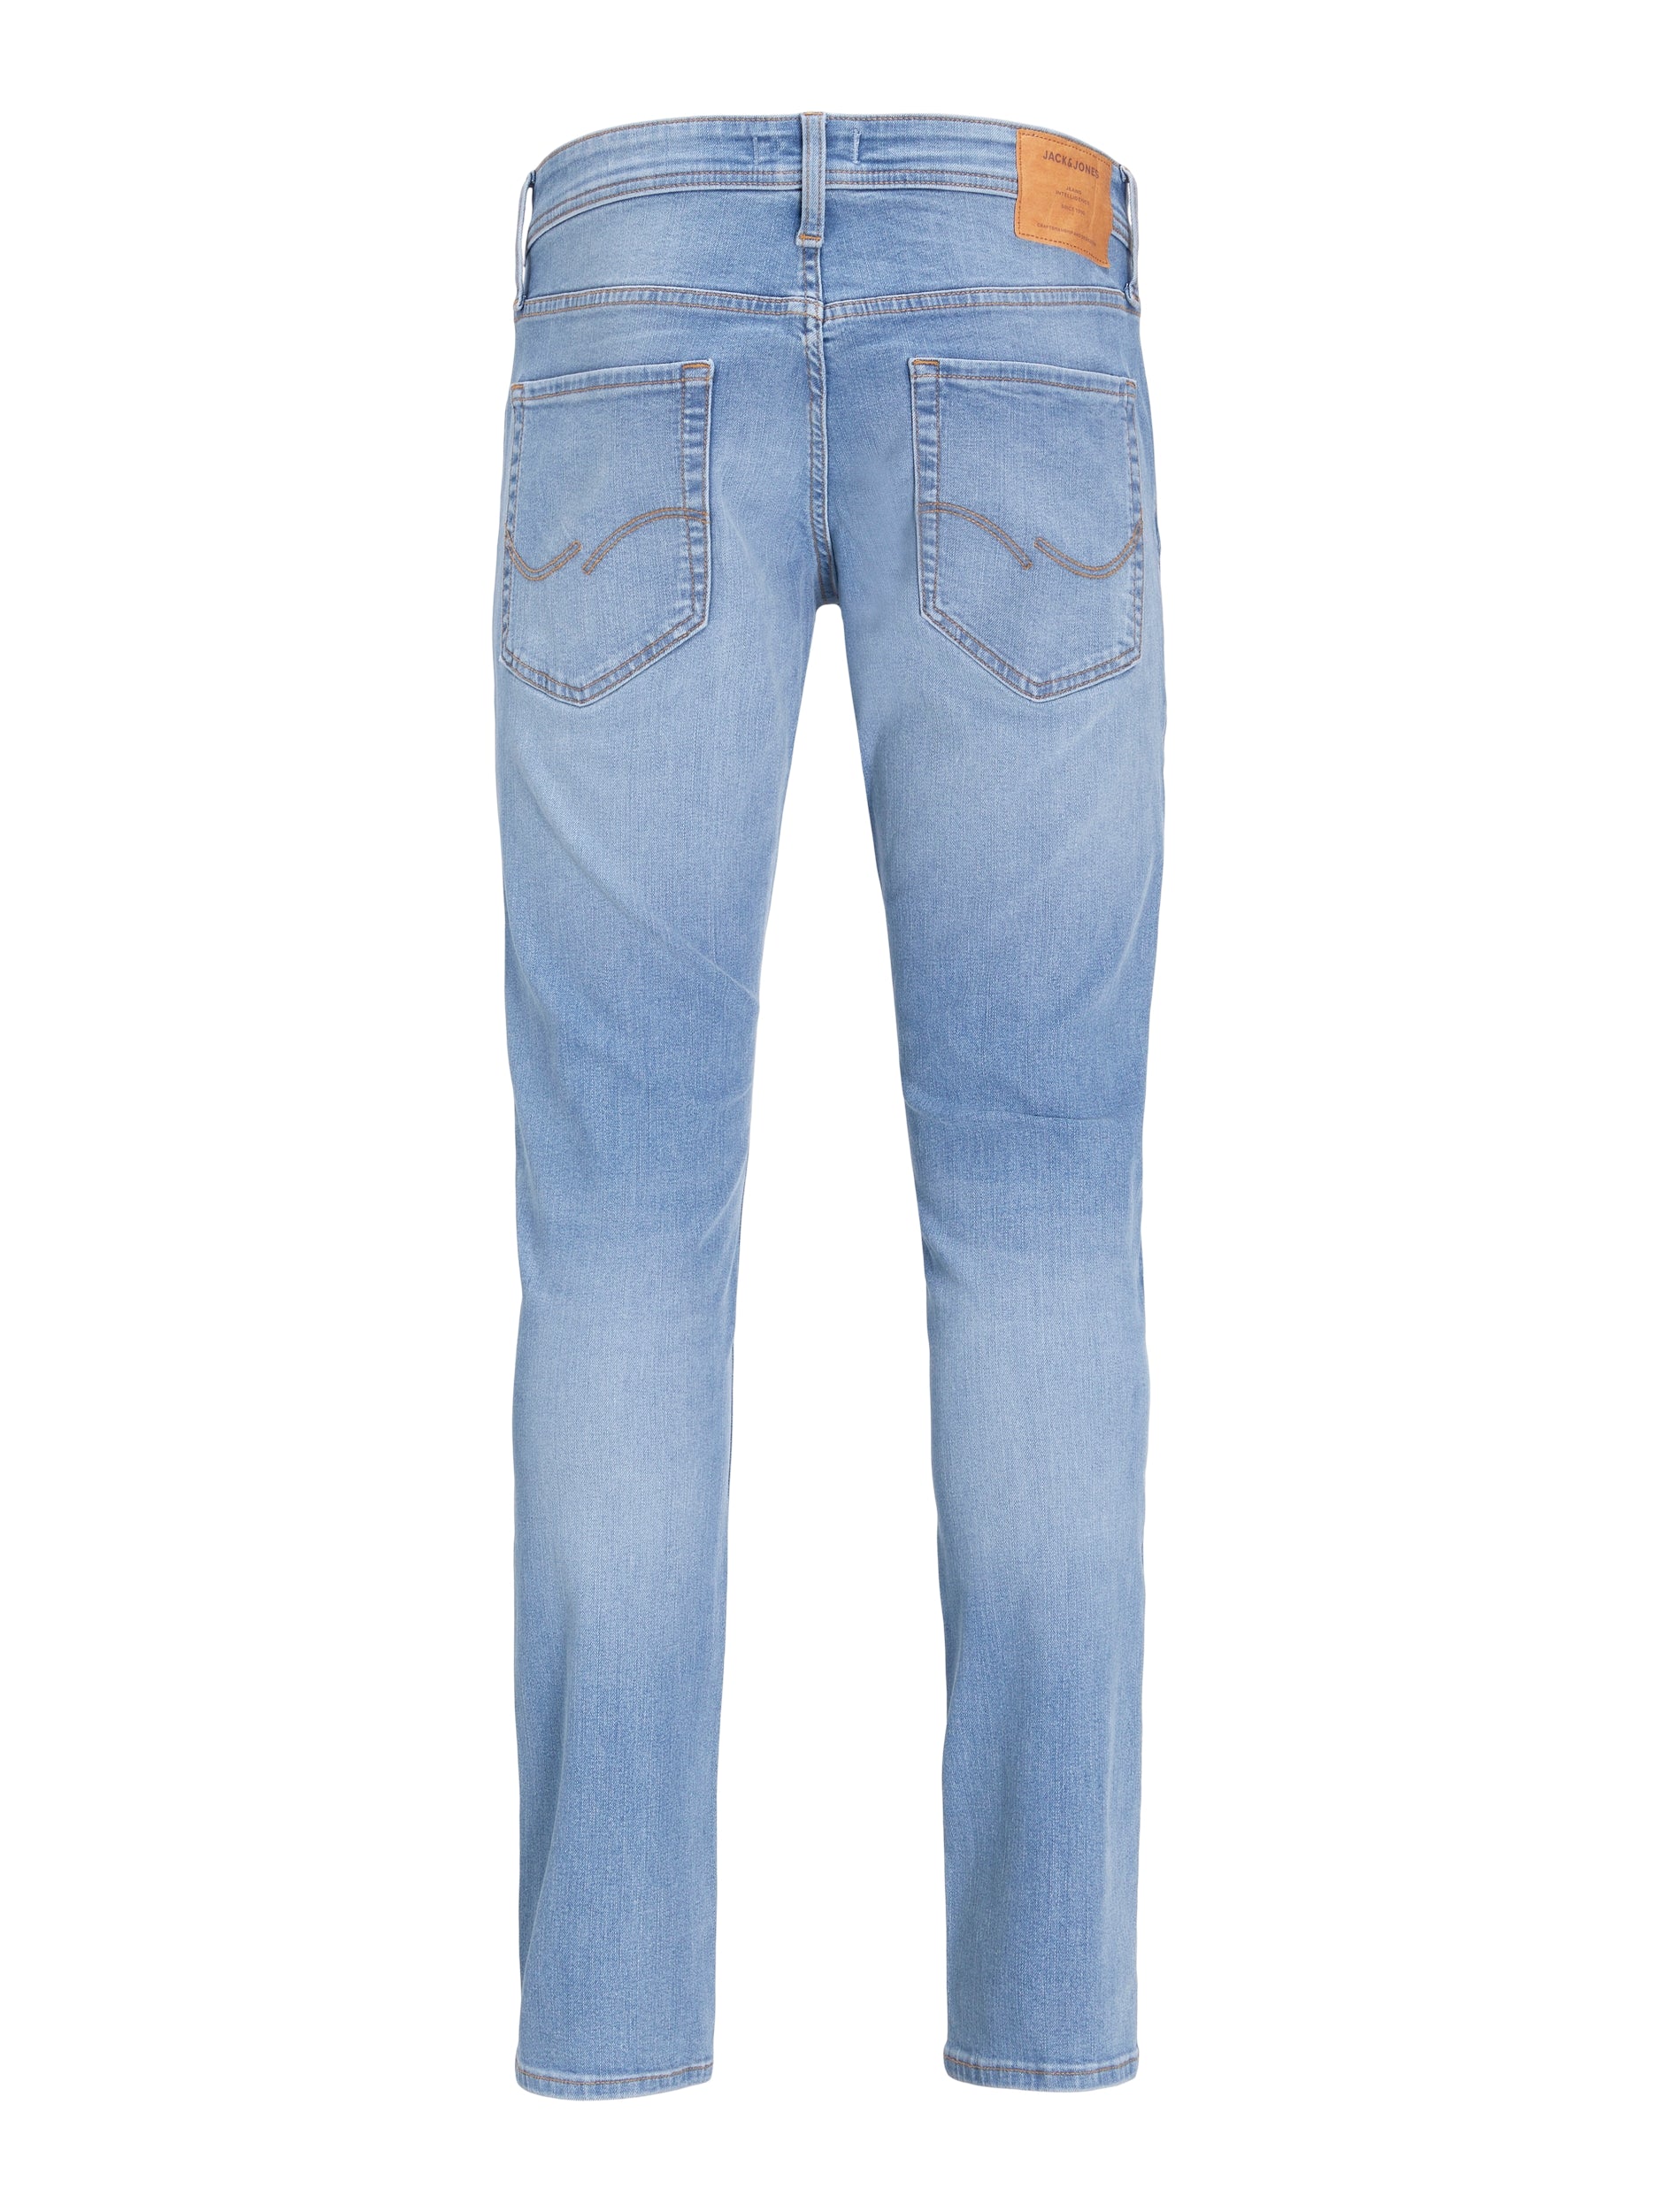 Jack & Jones Glenn Original 330 Slim Fit Jeans Blue Denim - Raw Menswear